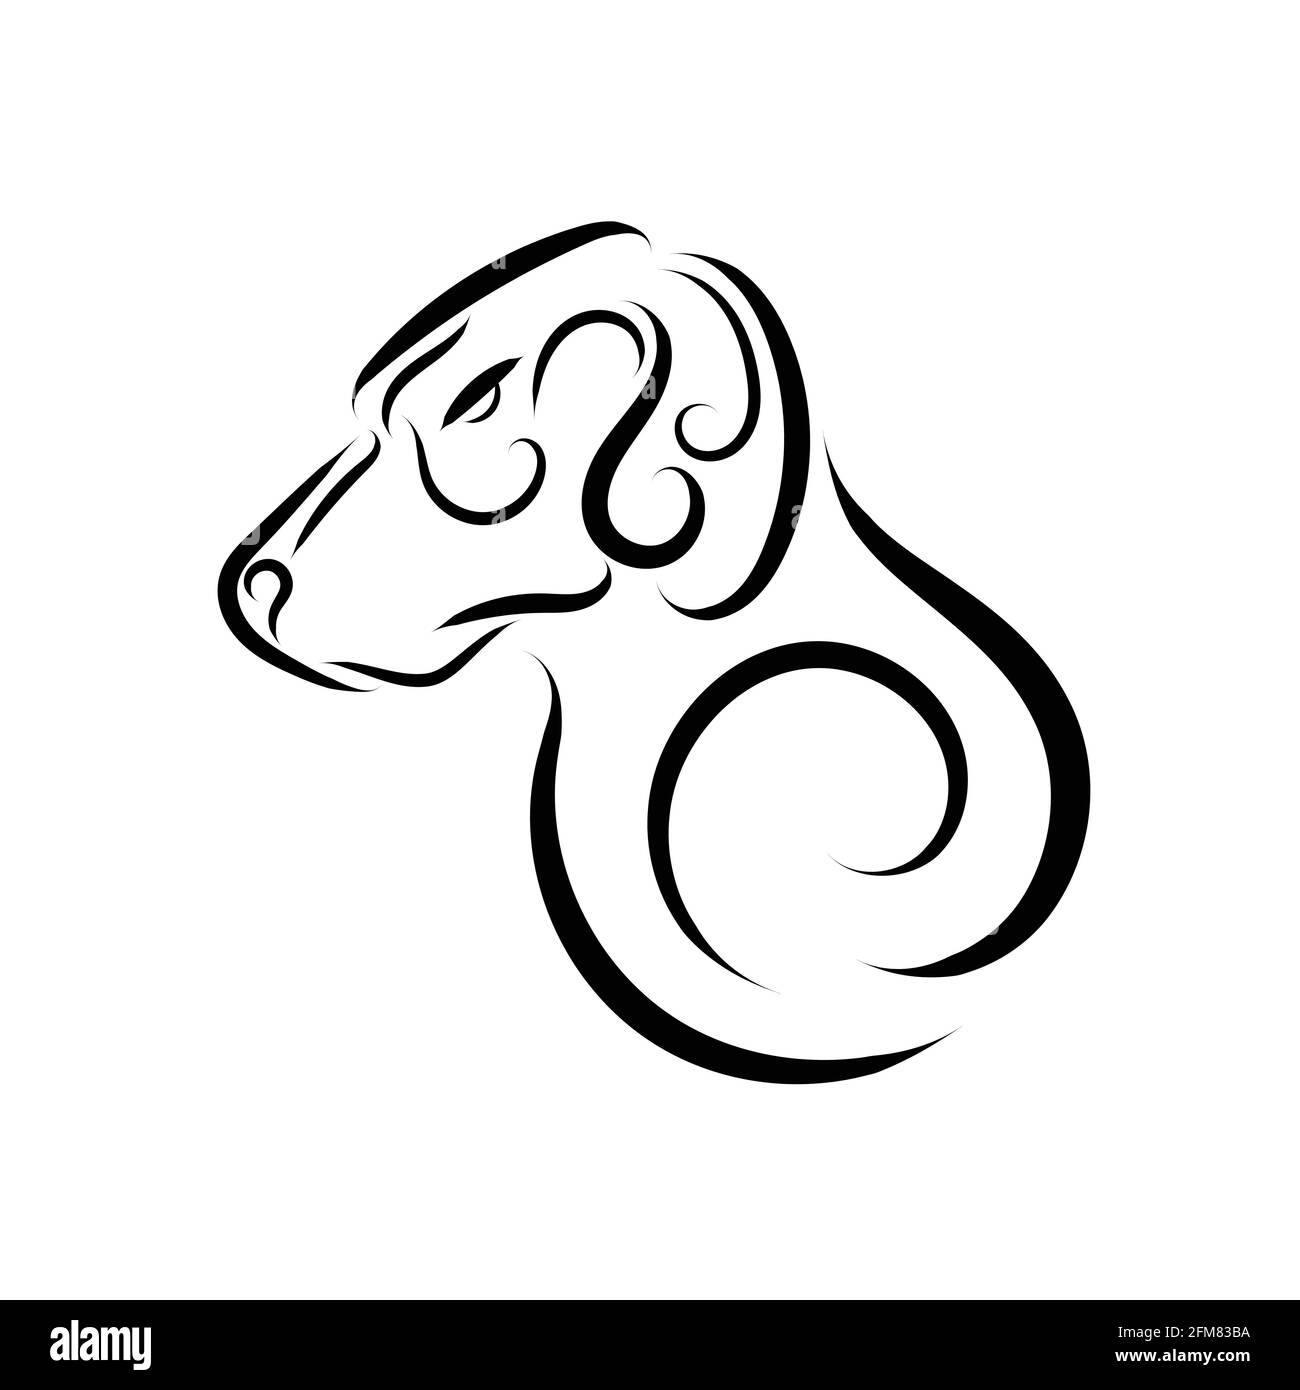 Dessin de la tête de chien en noir et blanc. Bon usage pour symbole, mascotte, icône, avatar, tatouage, T-shirt, logo ou tout autre motif que vous voulez. Illustration de Vecteur